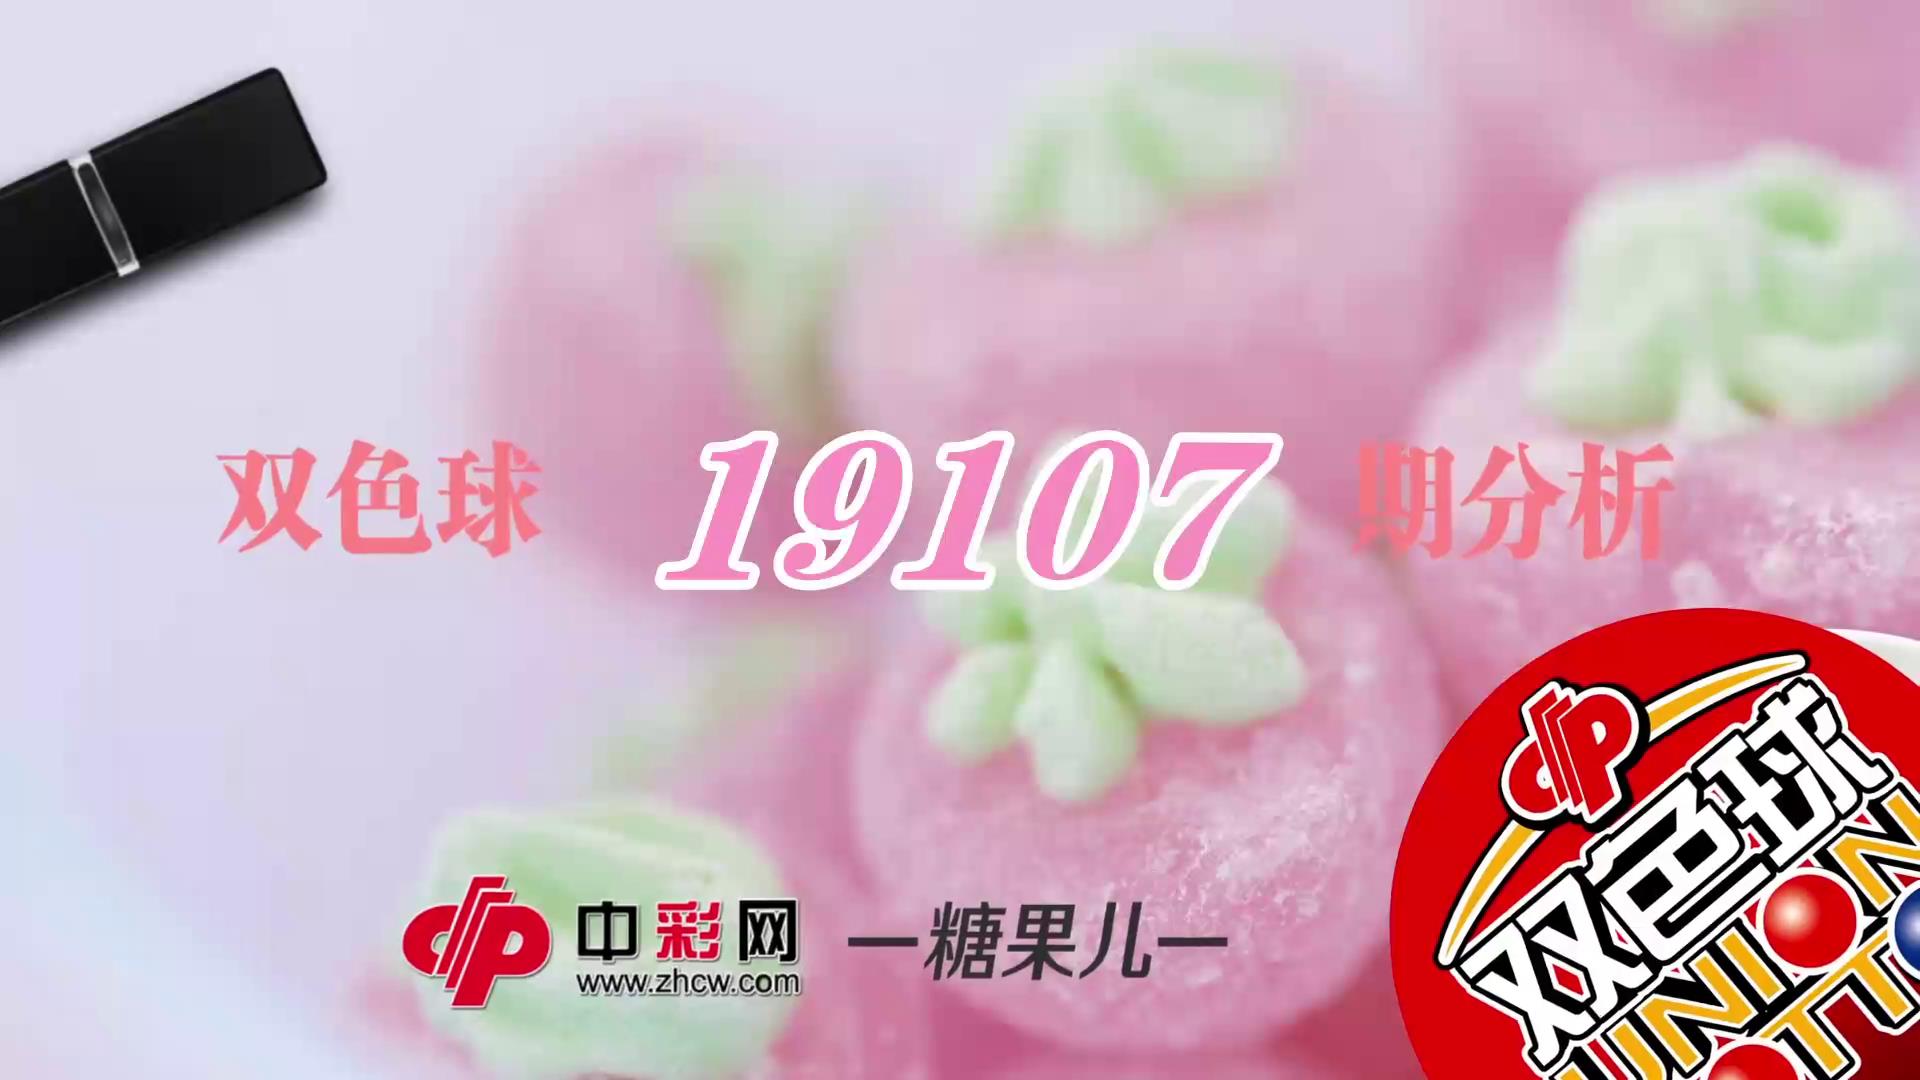 【中彩视频】糖果儿双色球第19107期